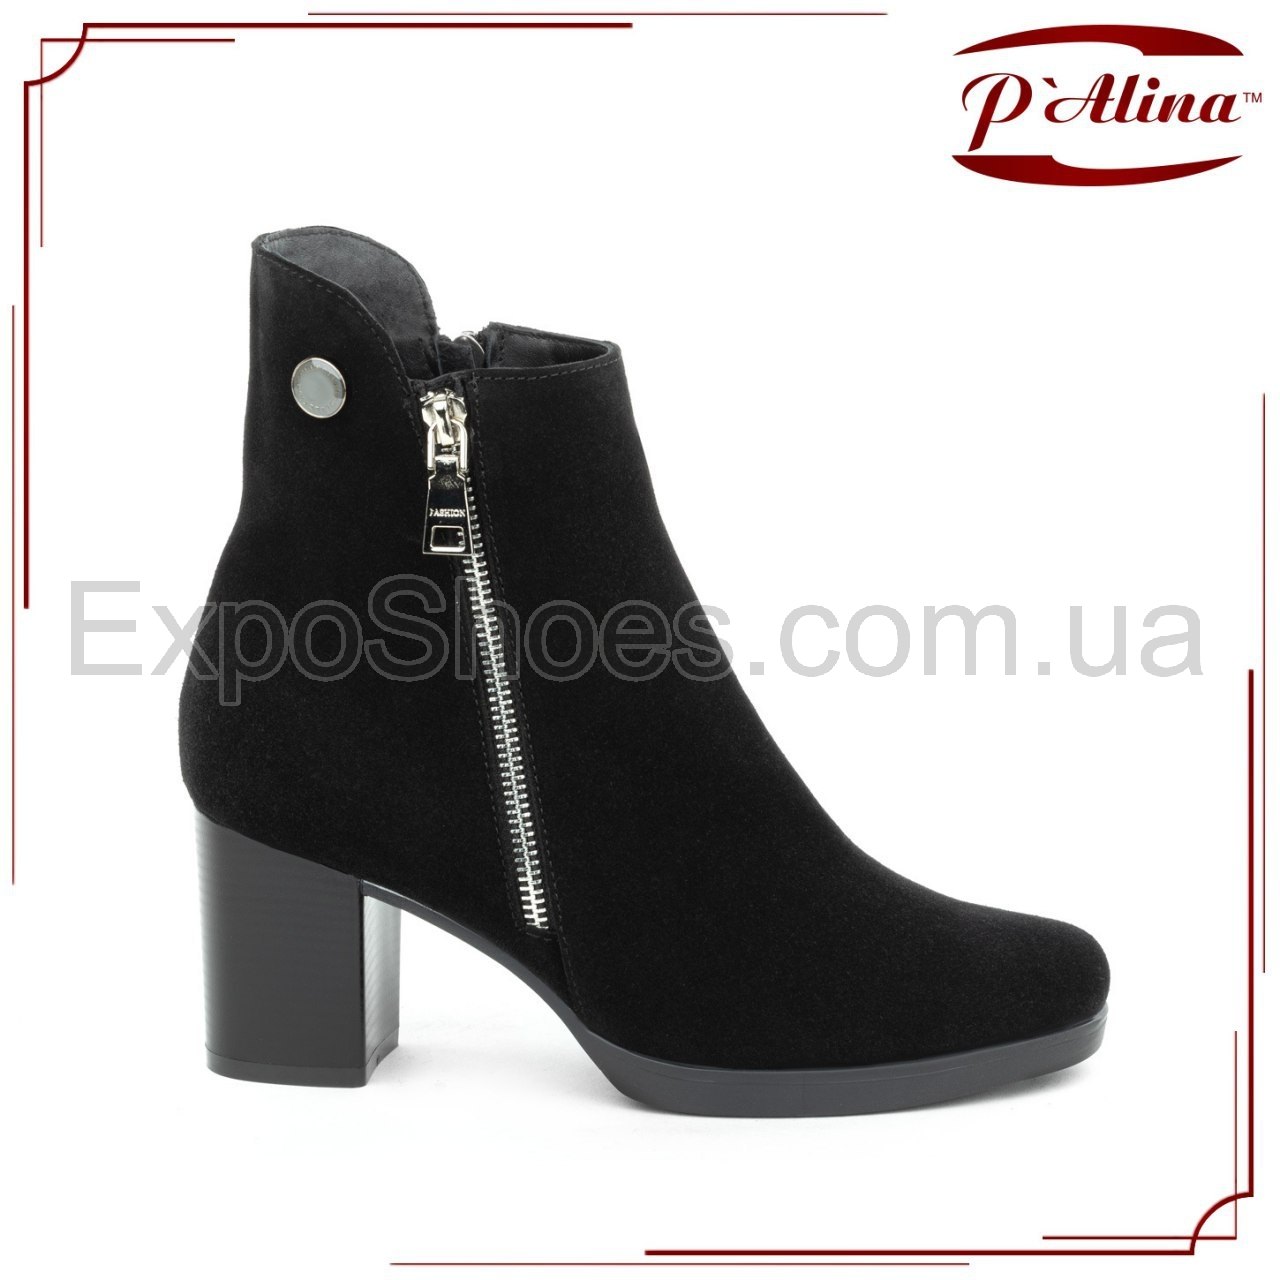 Коллекция женской обуви Весна-2020 ТМ Palina для оптовых покупателей Украины